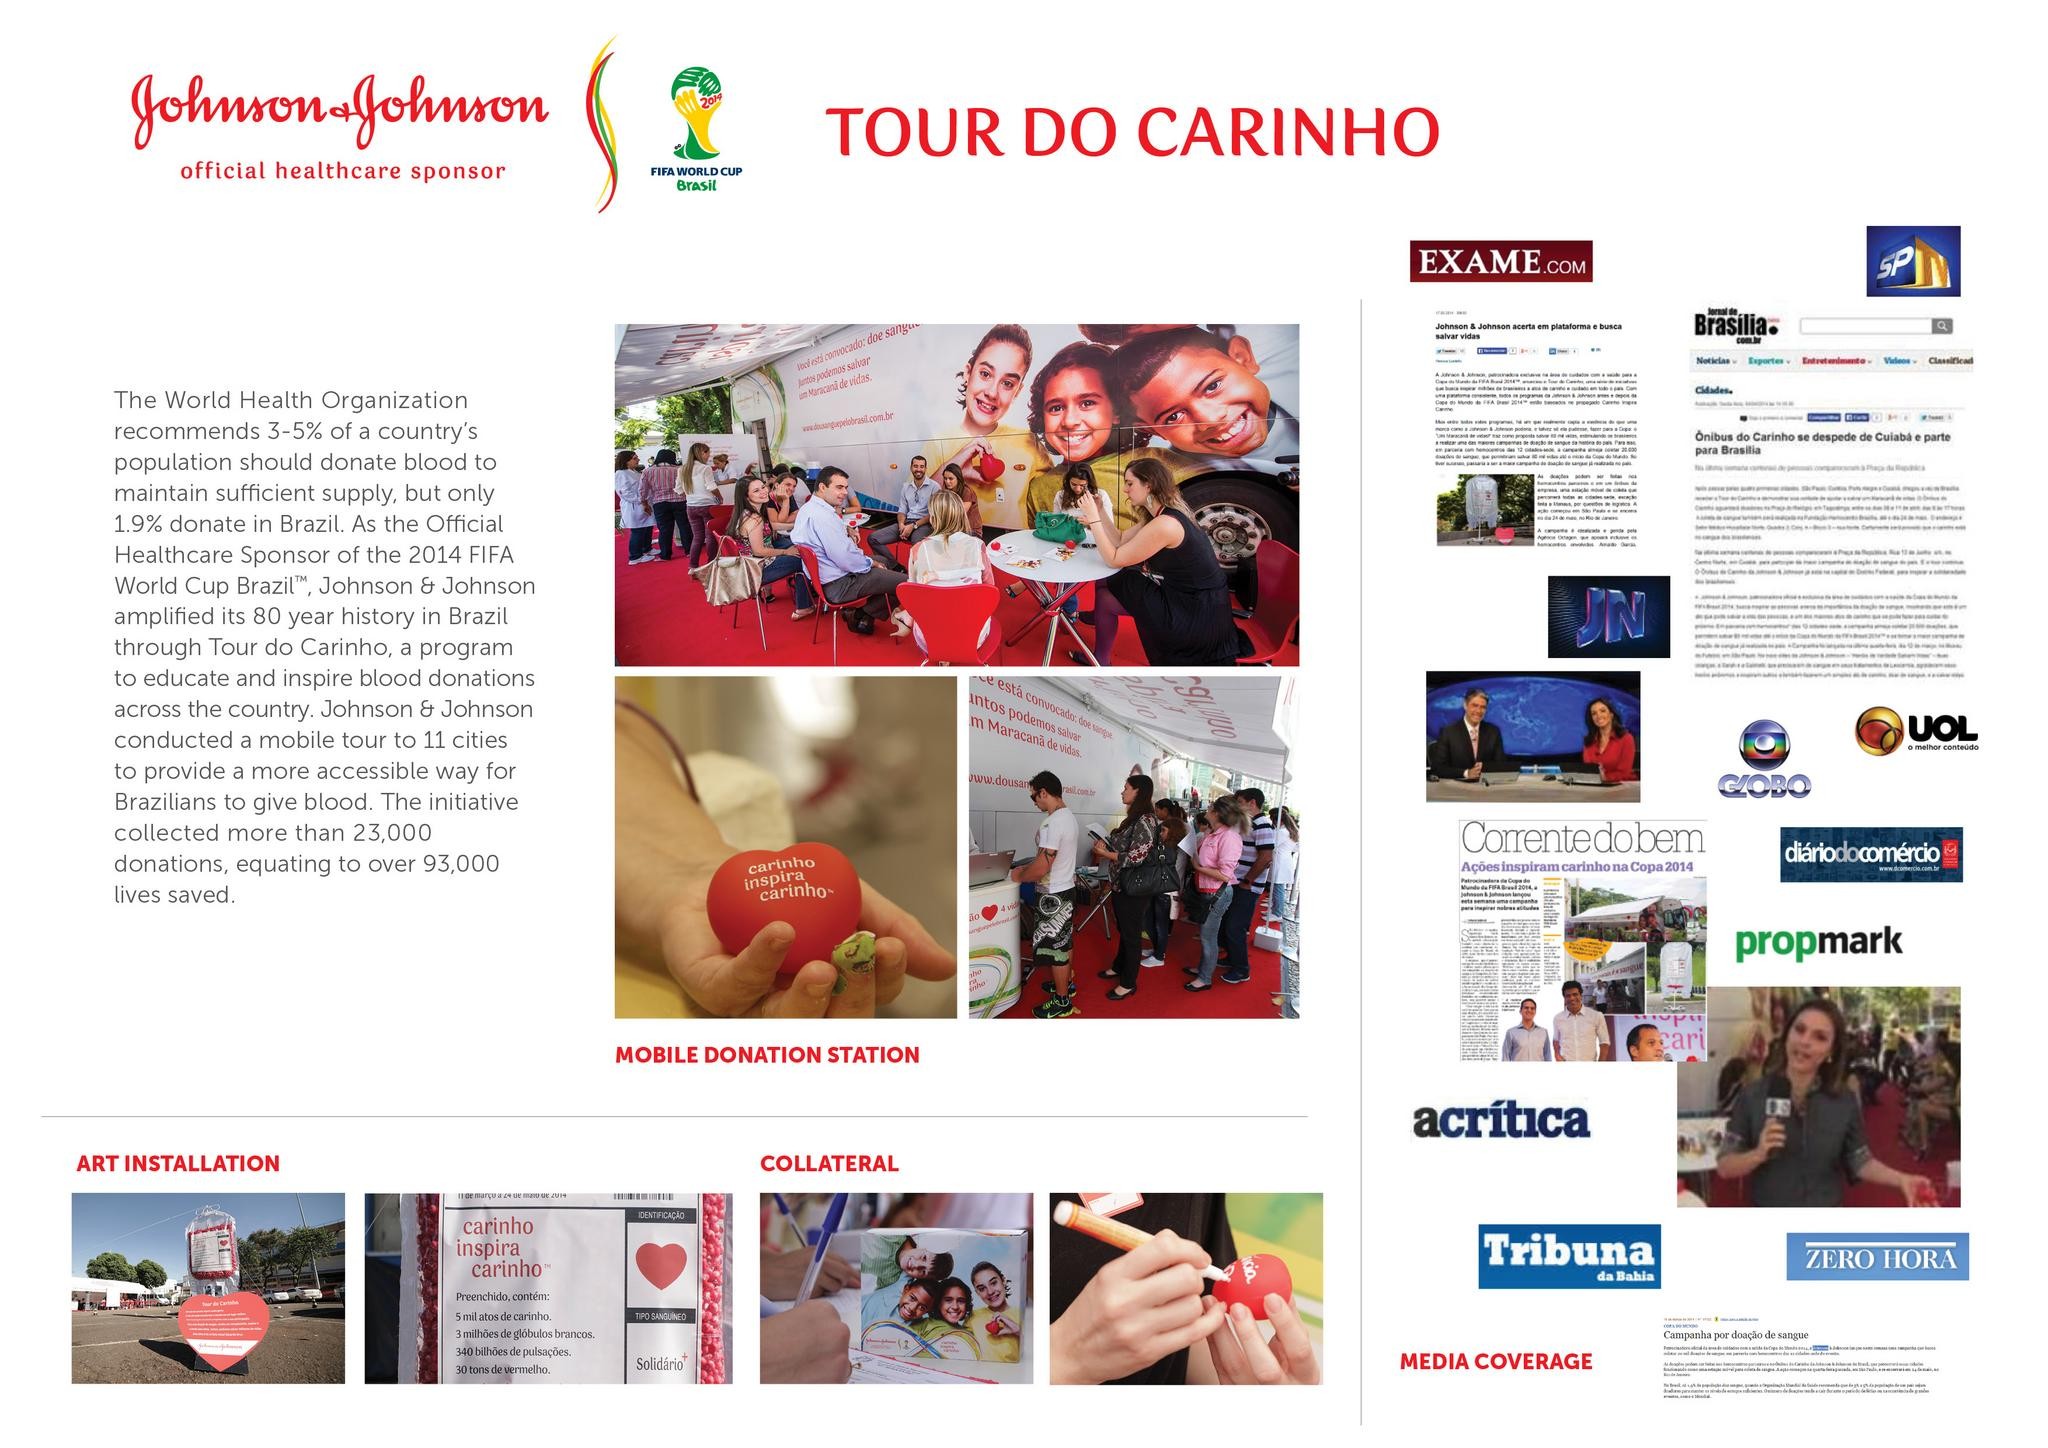 TOUR DO CARINHO (CARING TOUR)